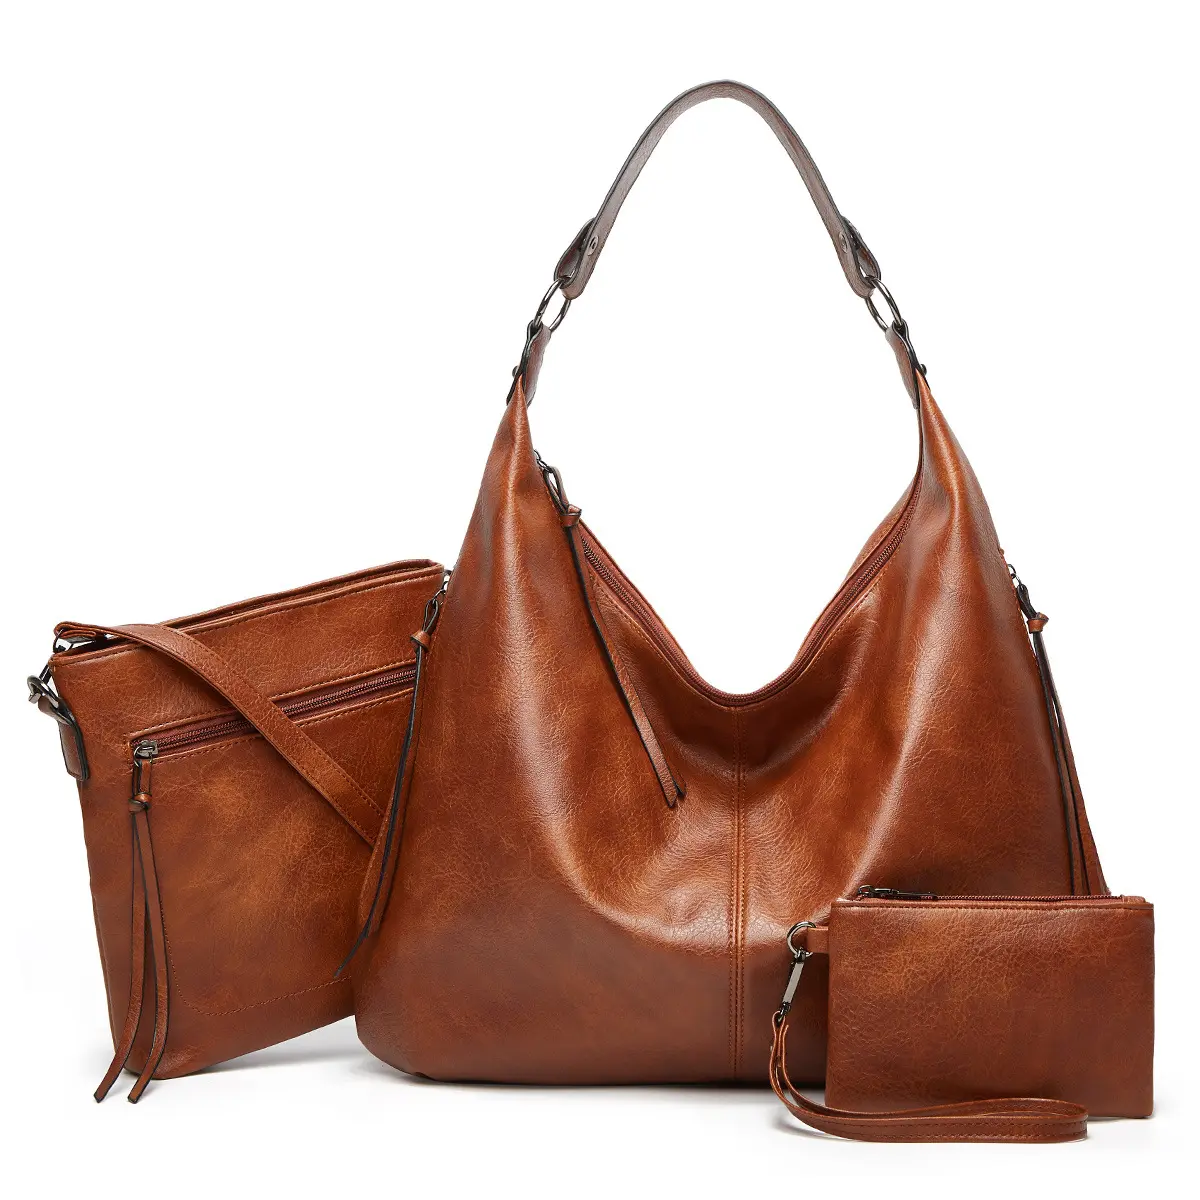 Handtaschen hersteller Set 3 in 1 Tasche PU Leder Schulter Umhängetasche Luxus Handtaschen für Frauen